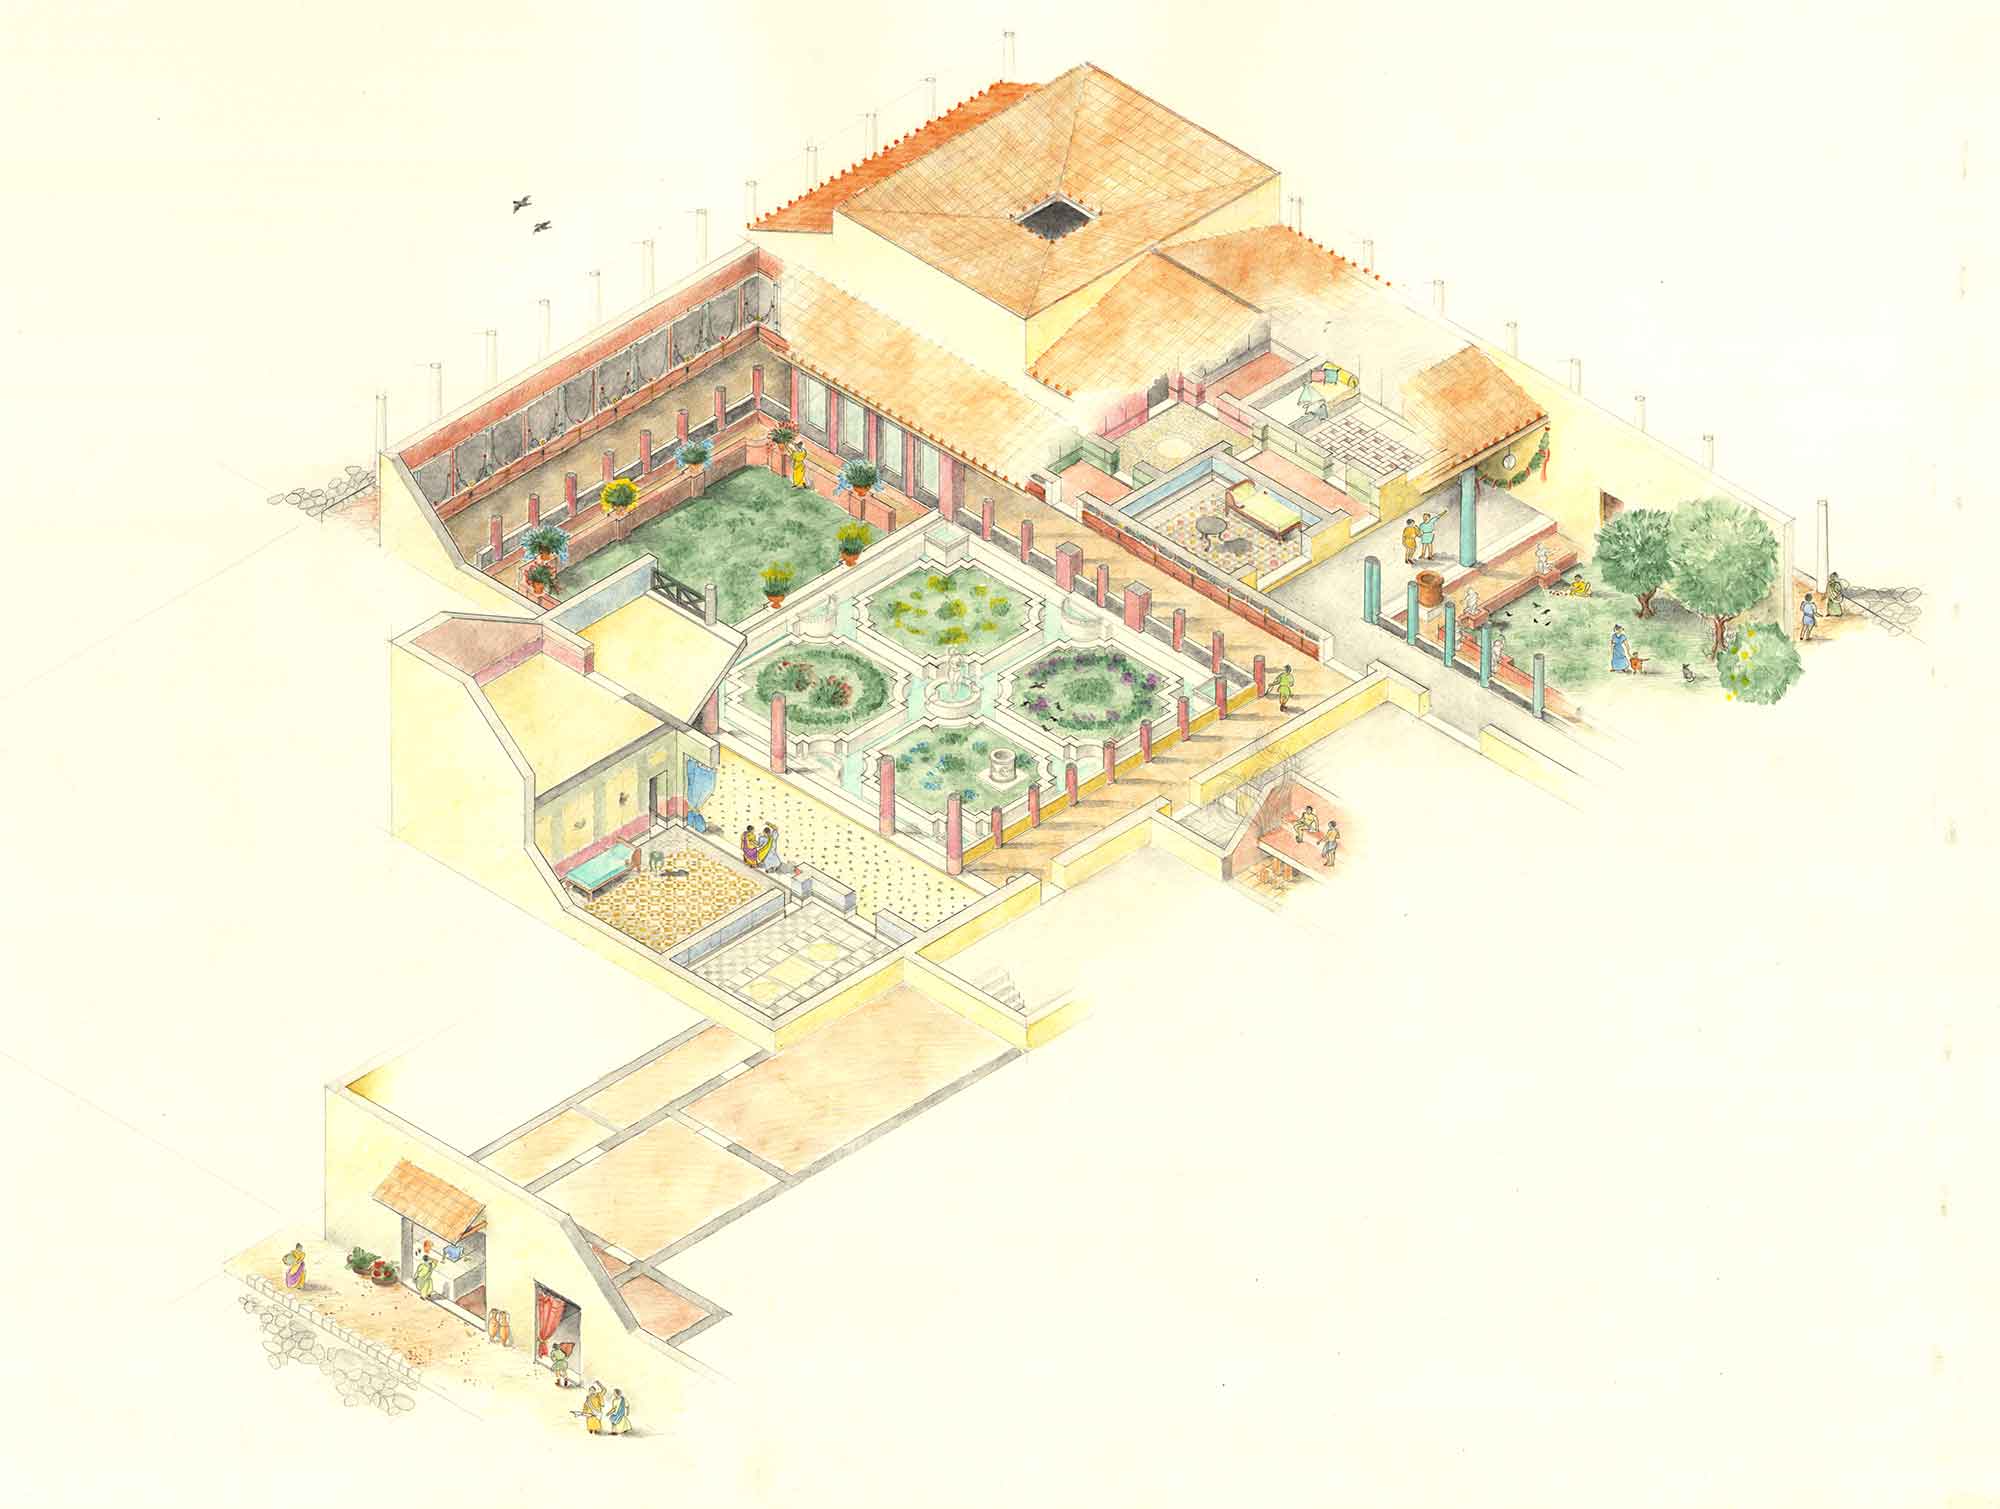 Ricostruzione grafica dell’antica residenza romana